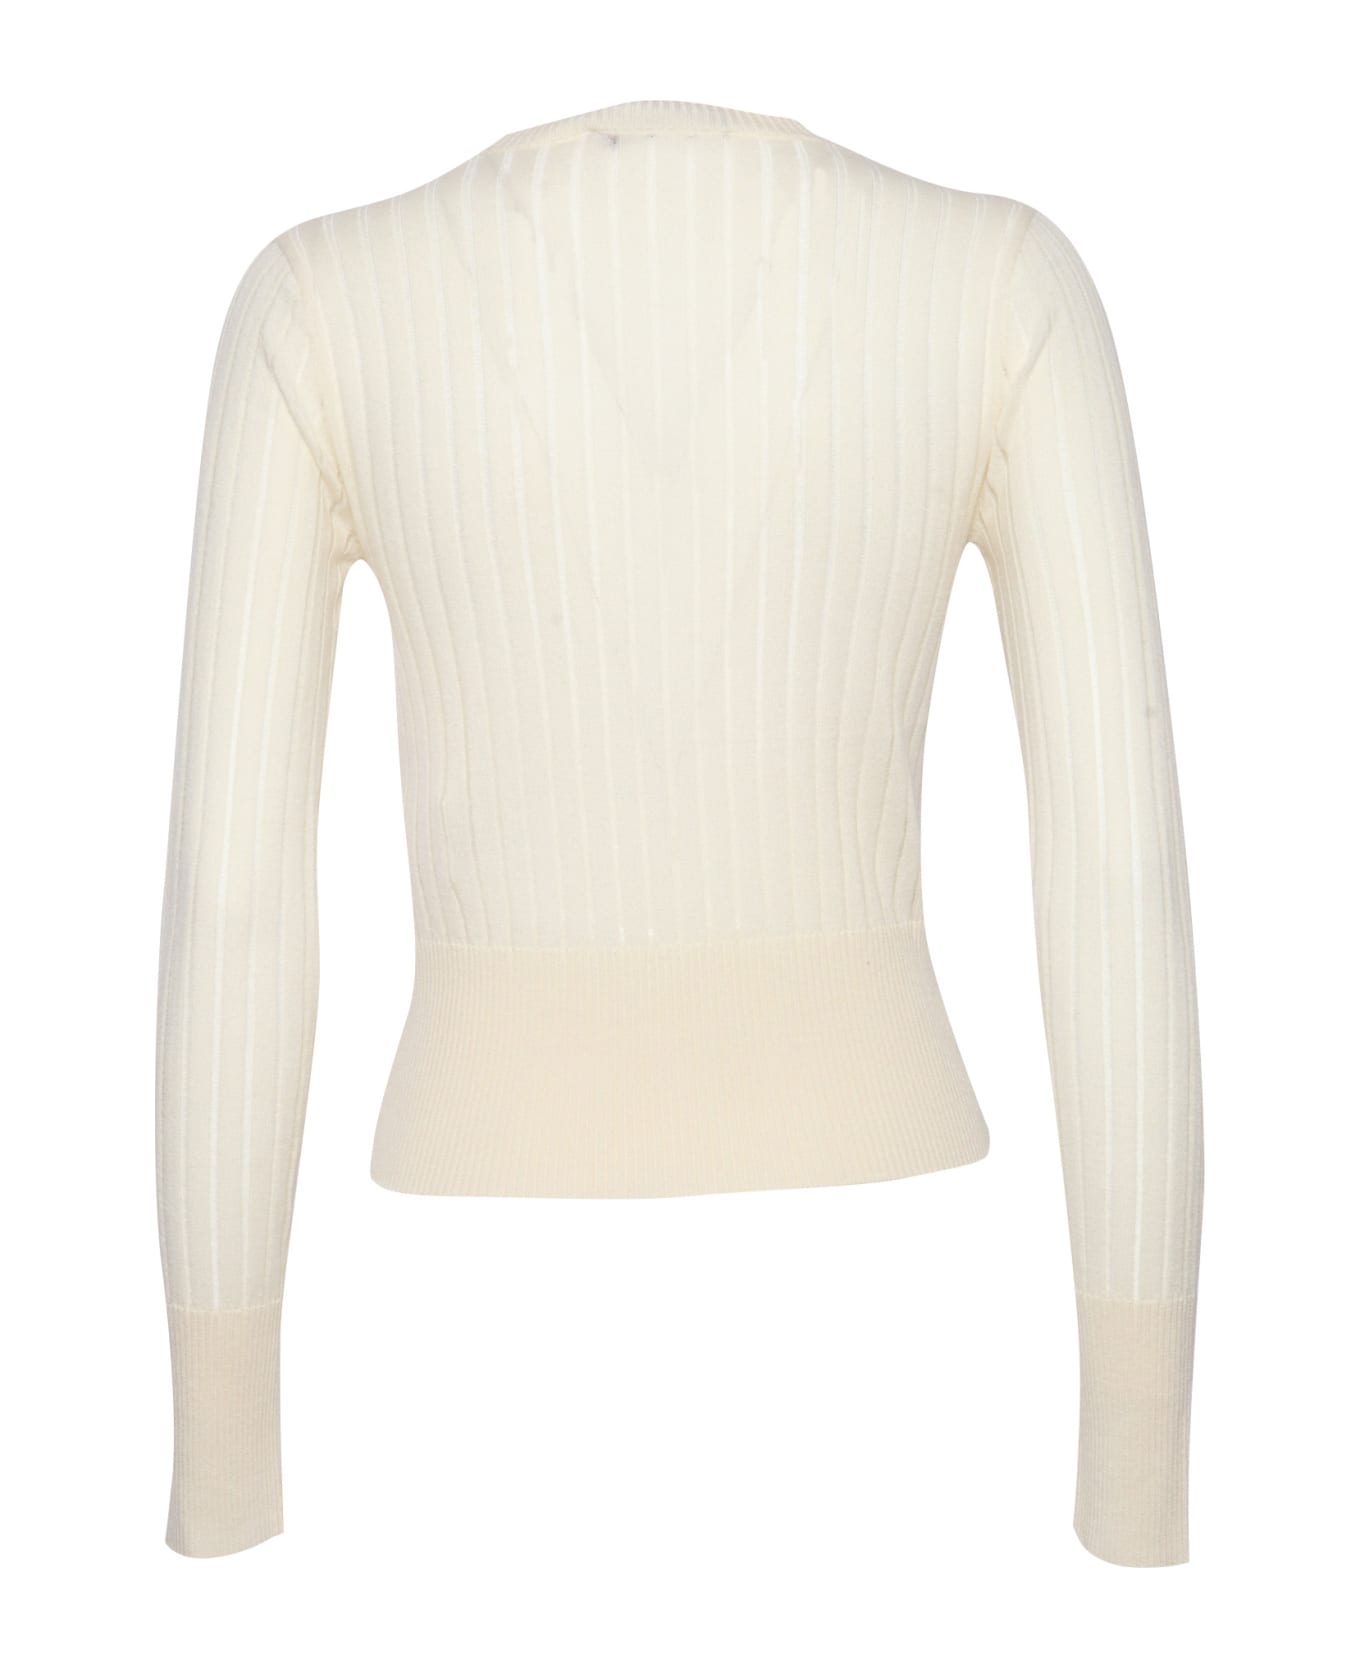 Max Mara Studio Funale Sweater - WHITE